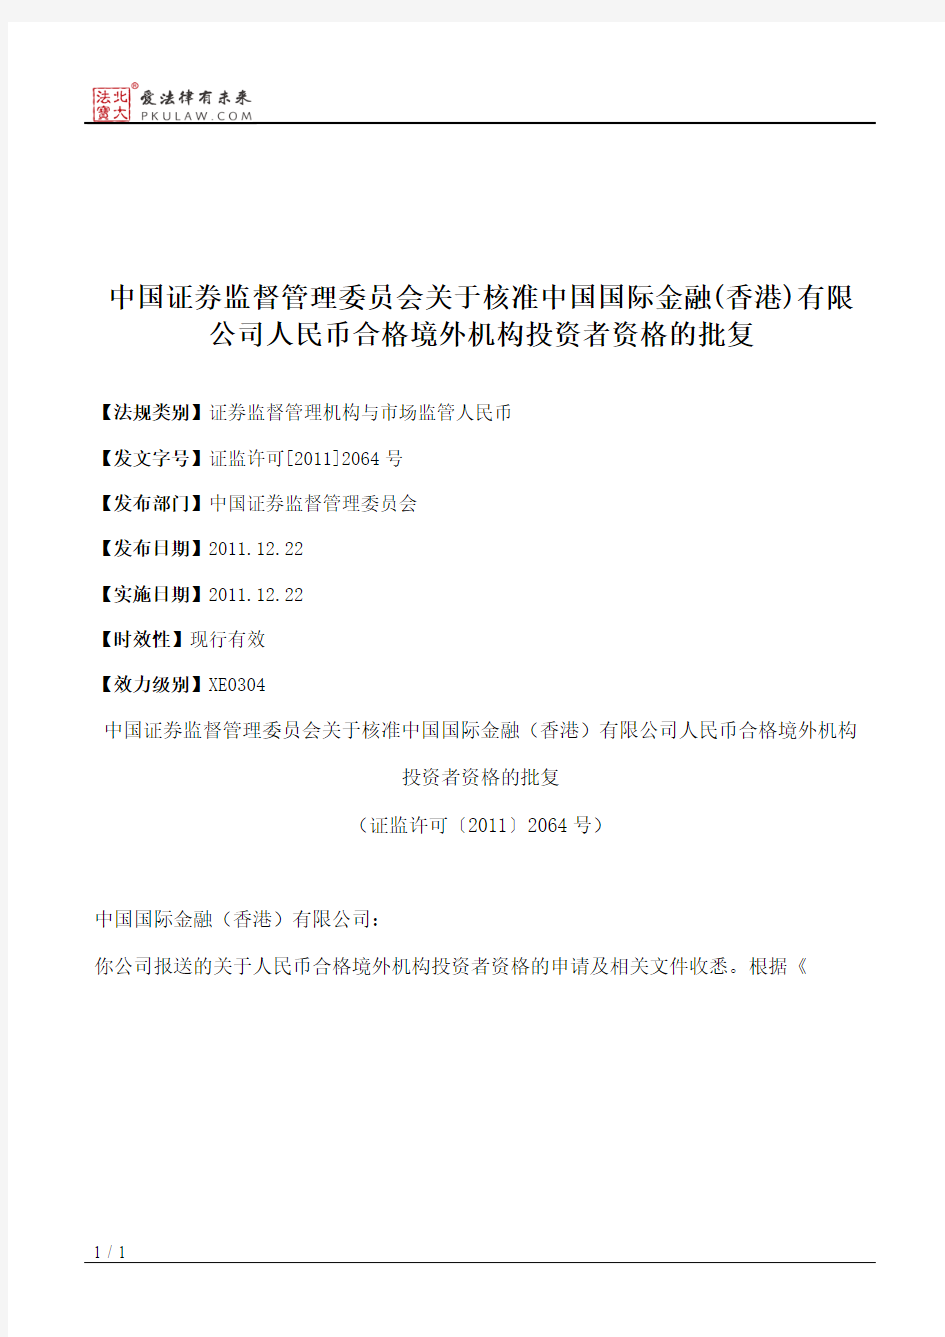 中国证券监督管理委员会关于核准中国国际金融(香港)有限公司人民